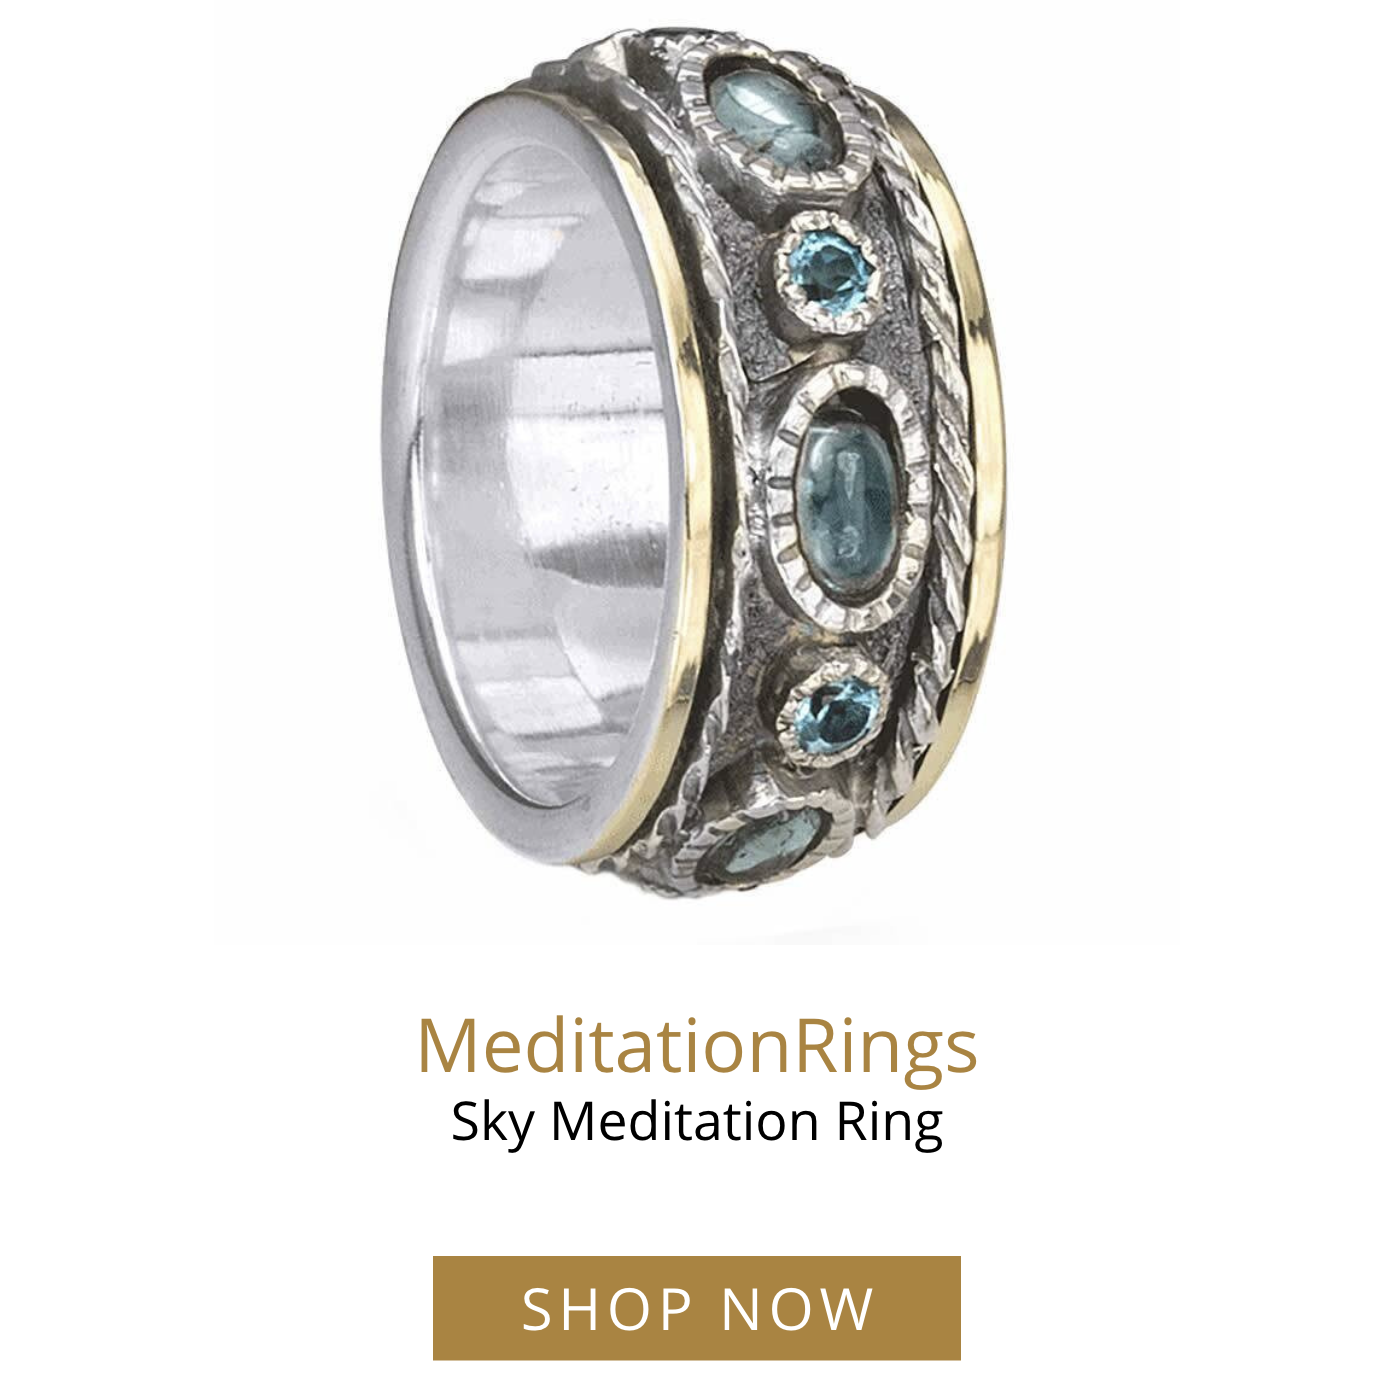 MeditationRings Sky Meditation Ring